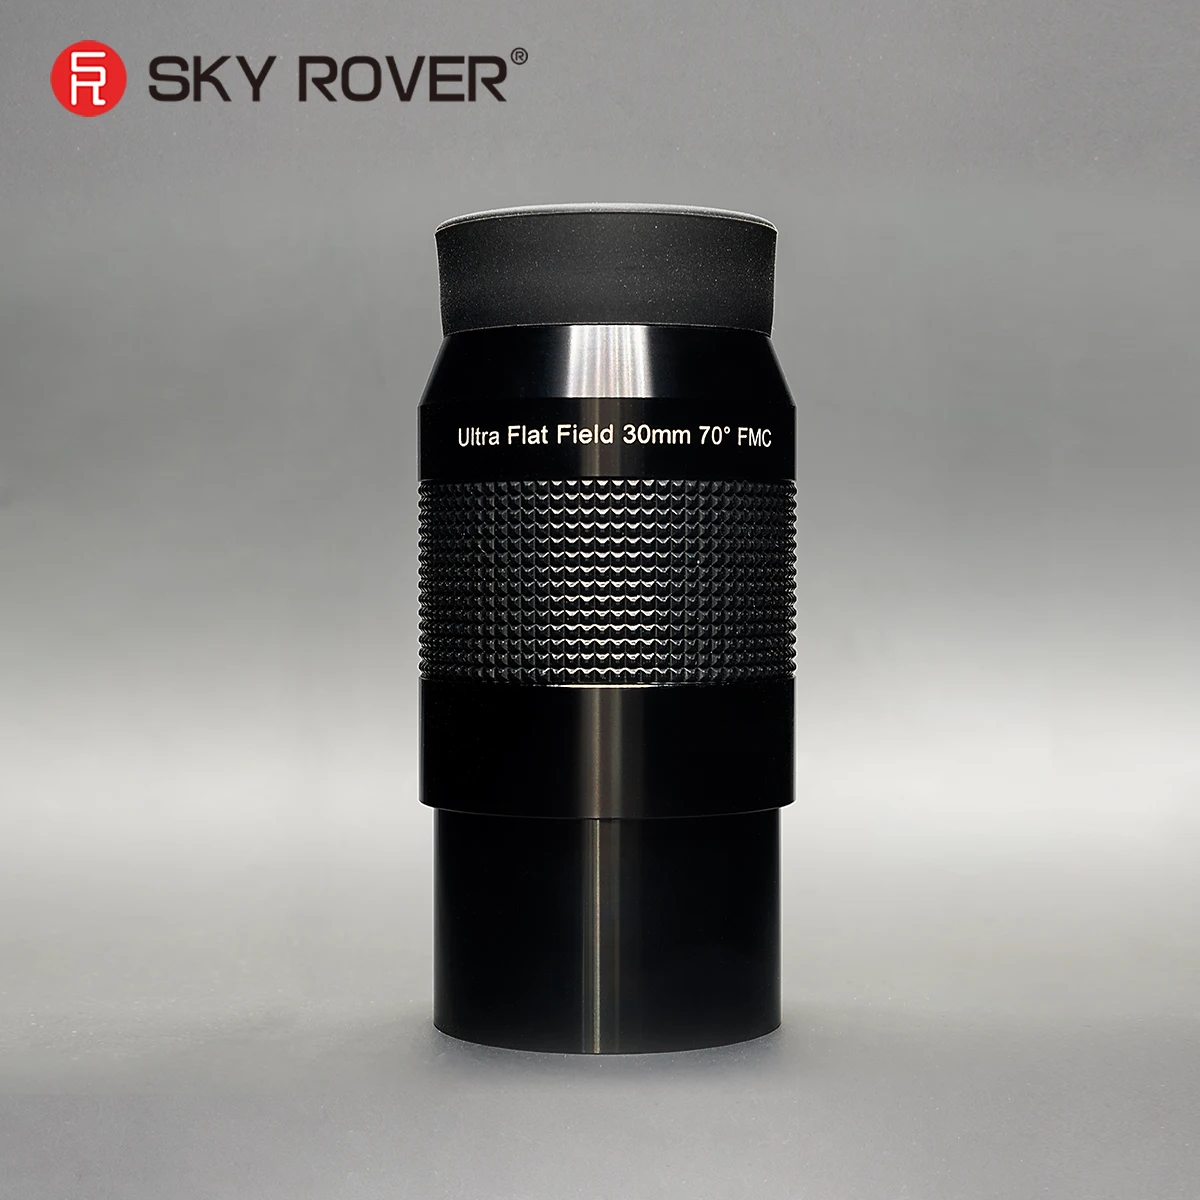 

Sky Rover Uf 30Mm Oculair Leerling High Definition Sharp Oculair Telescoop Astronomische Telescoop